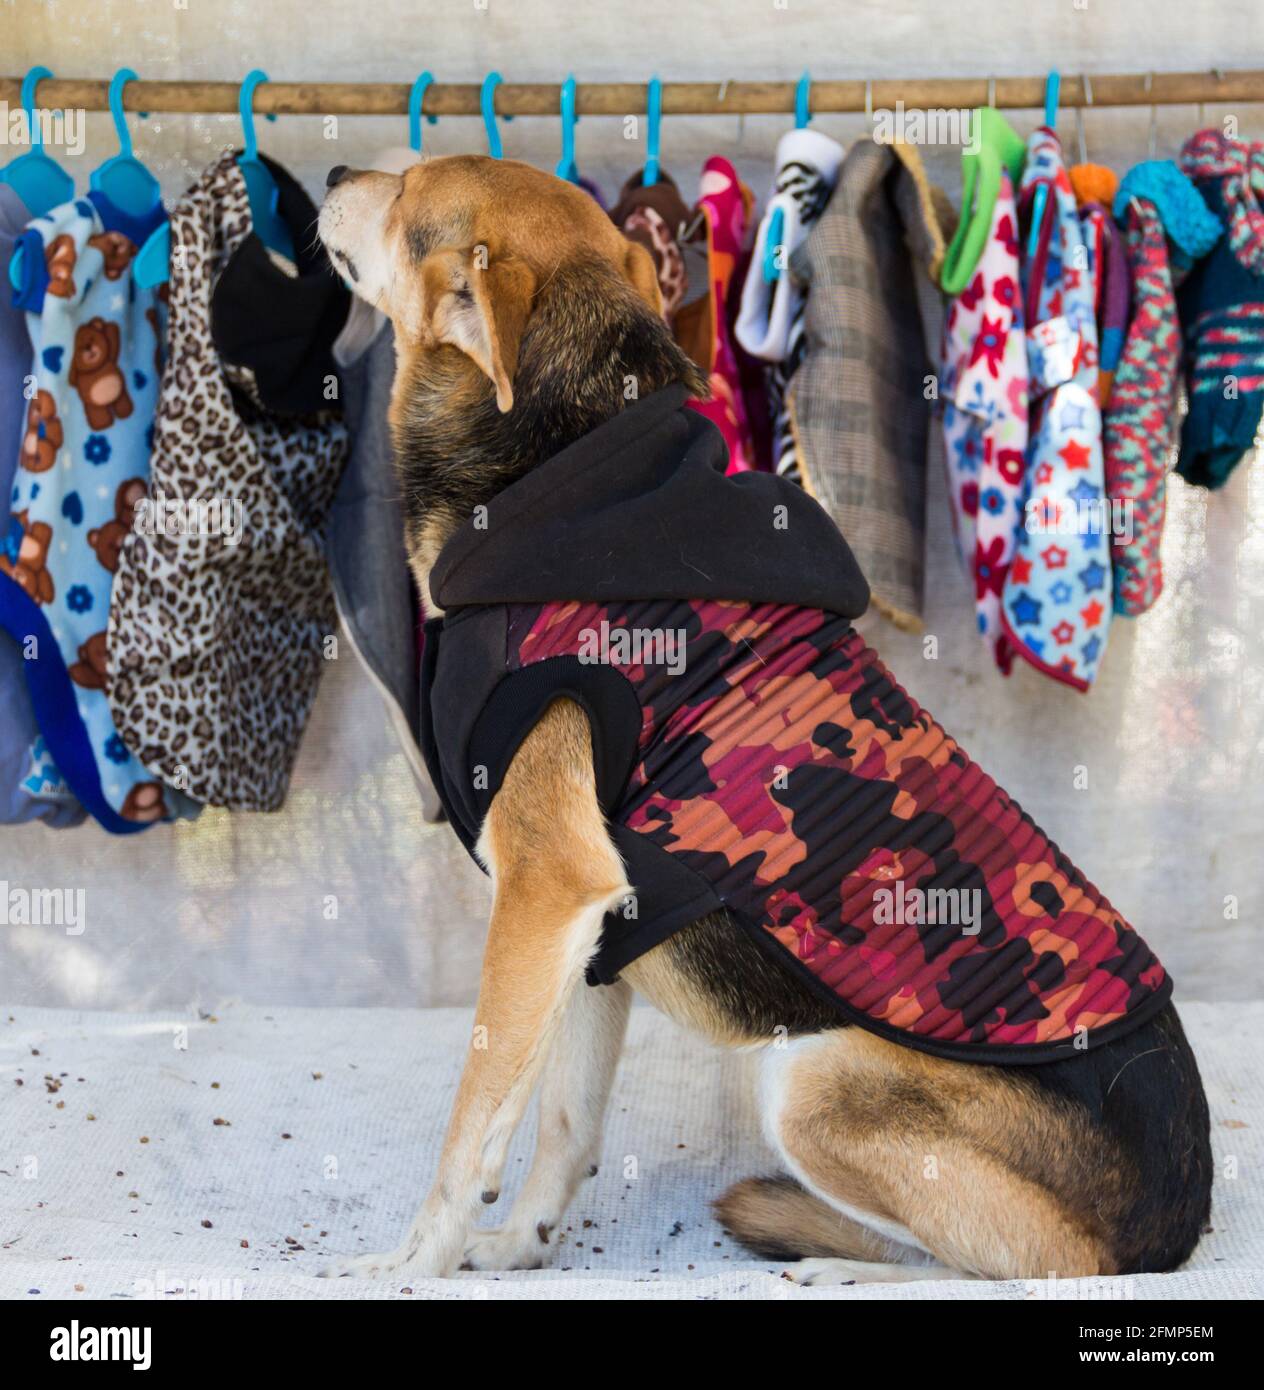 perro de ropa en la tienda de para mascotas Fotografía de stock - Alamy